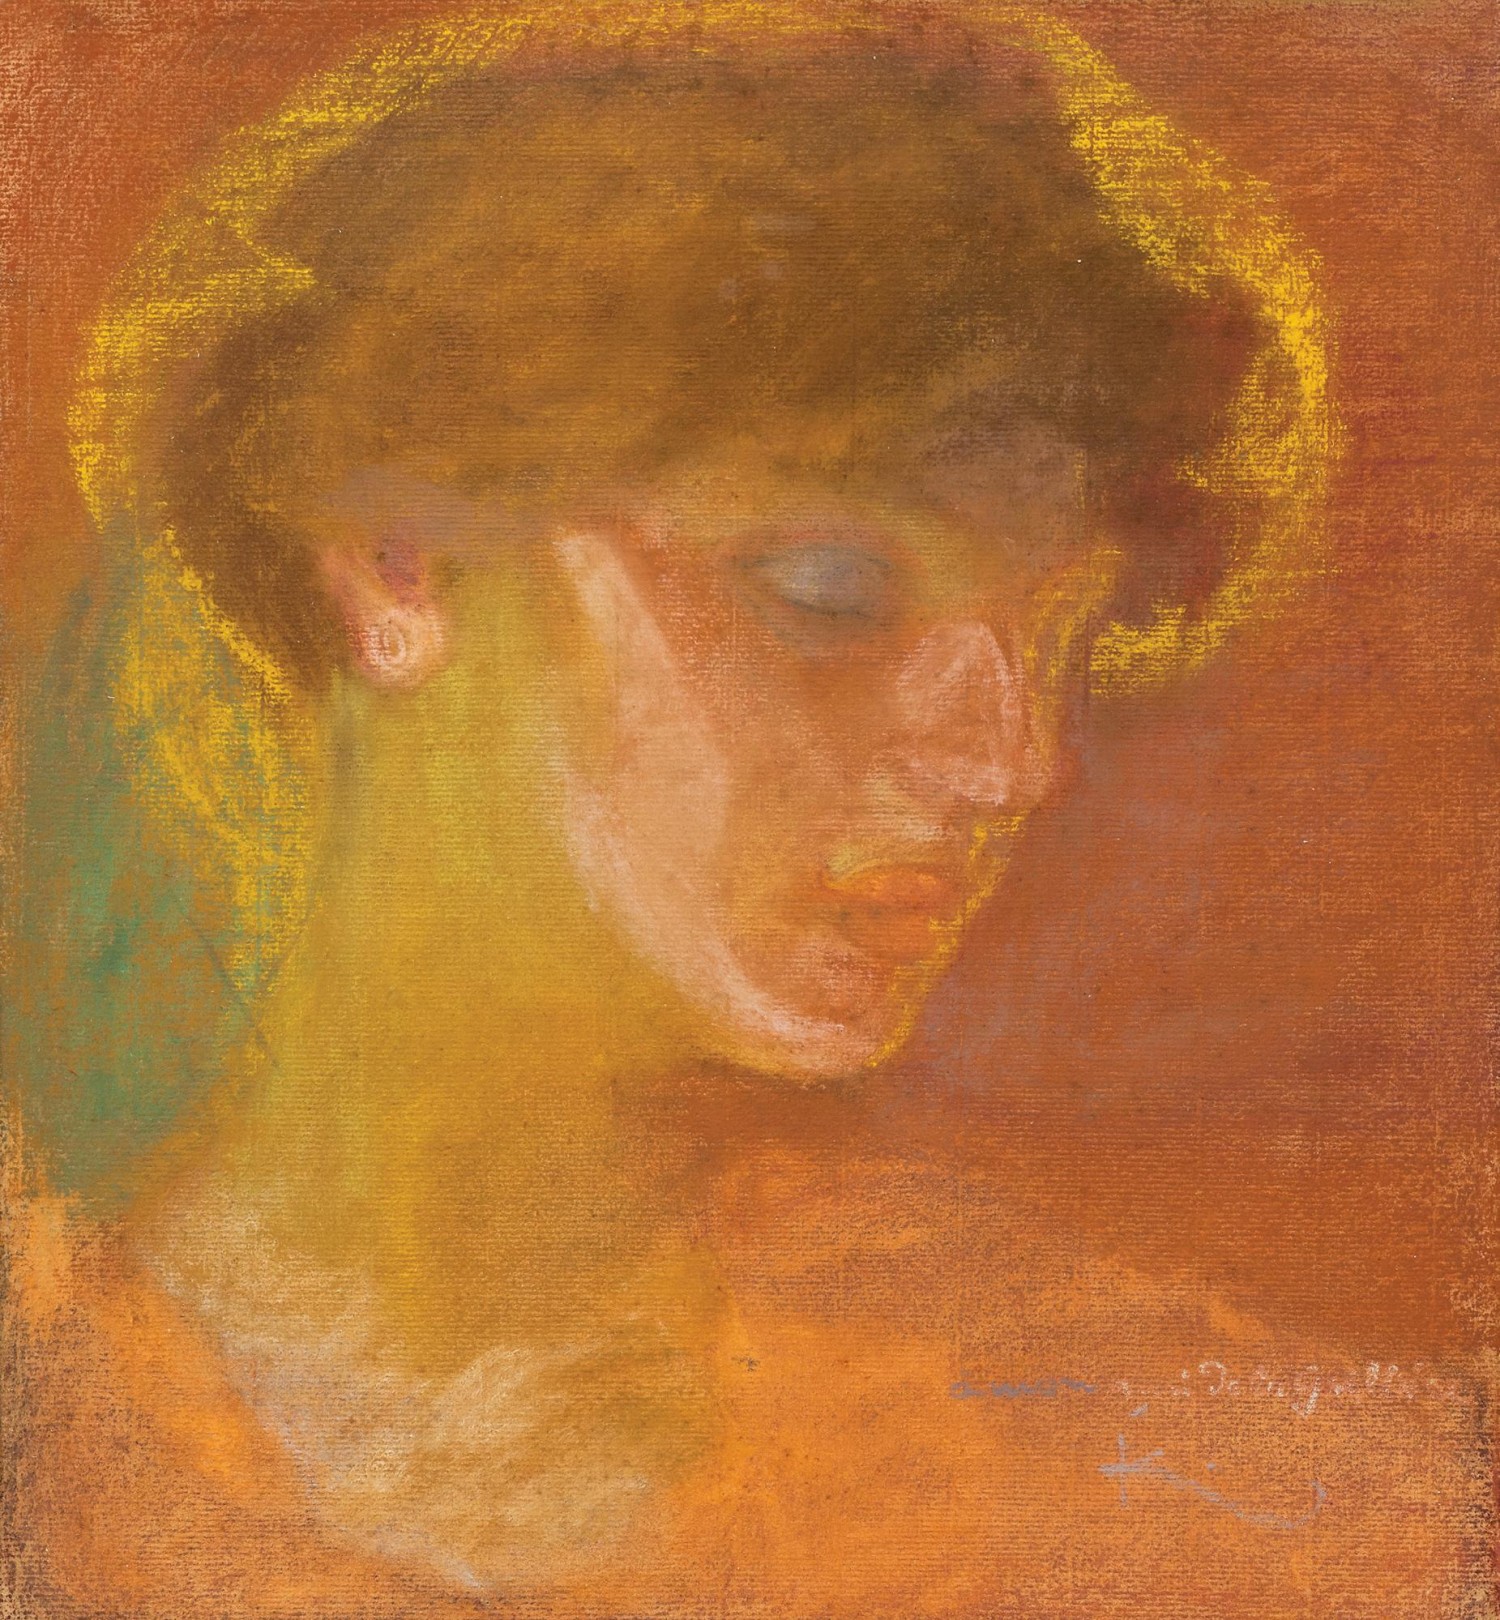 3/ František Kupka: Portrét ženy, 1908-1909  pastel na papíře, 38 x 34,5 cm cena: 2 294 000 Kč, European Arts, 17. 3. 2018